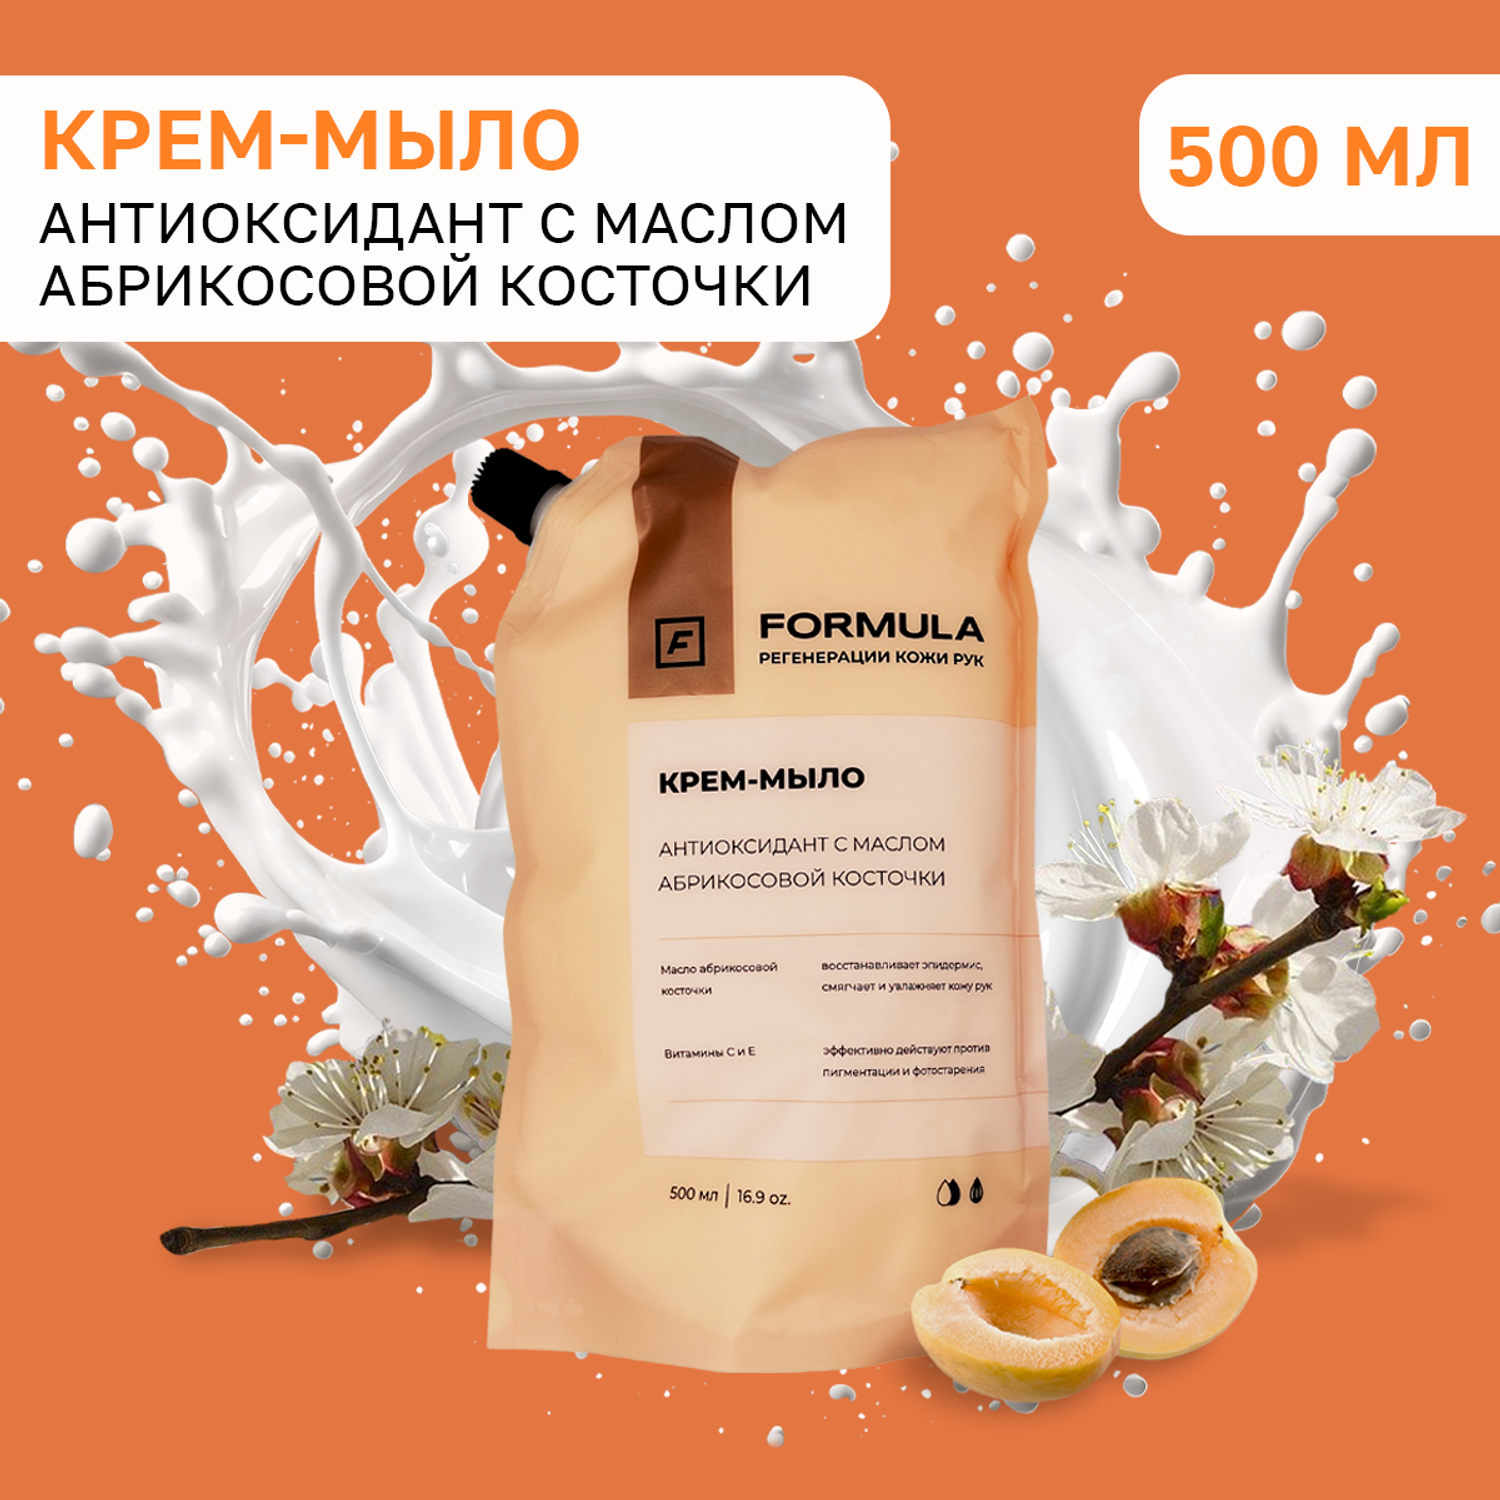 Крем-мыло F Formula Антиоксидант с маслом абрикосовой косточки 500 мл дой-пак - фото 1